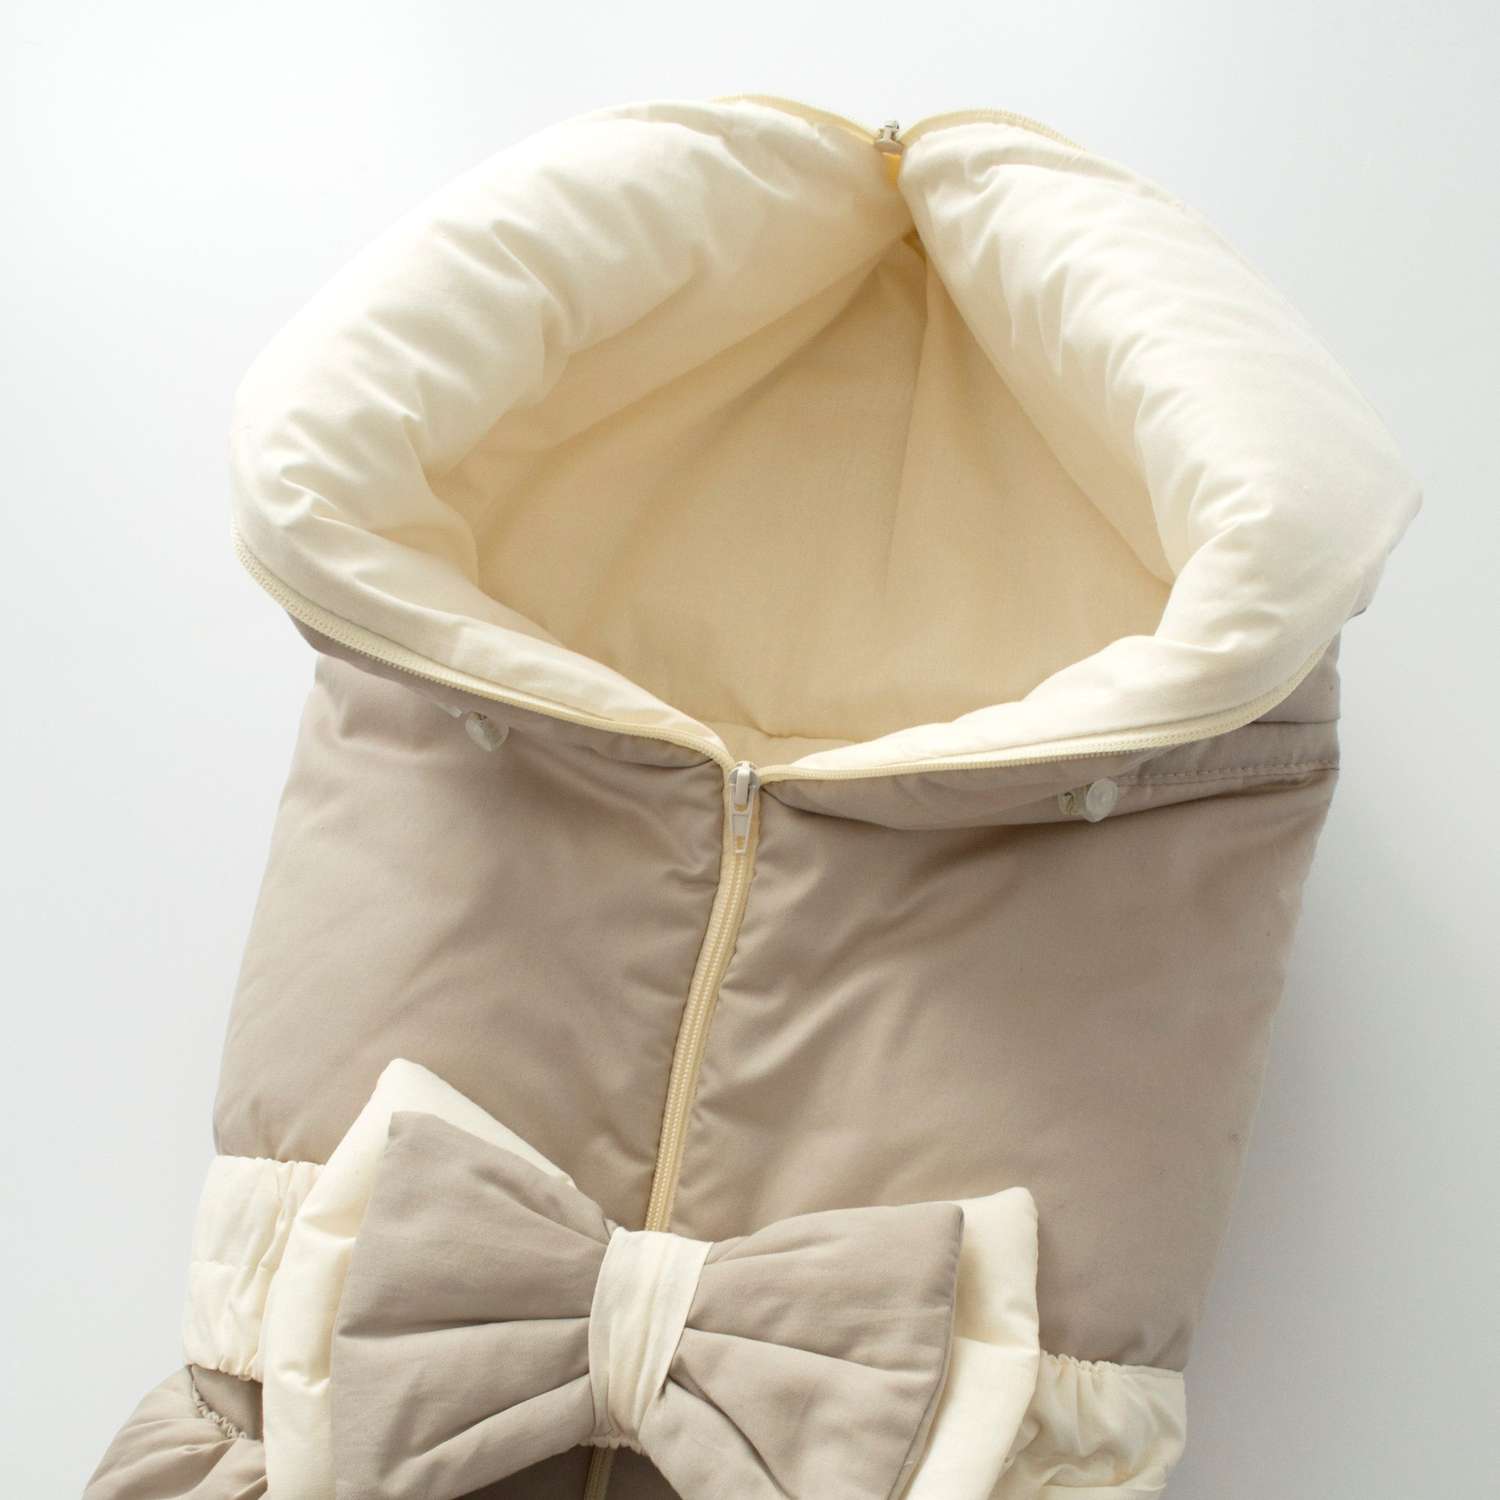 Одеяло-трансформер Clapsy на выписку новорожденных - фото 4